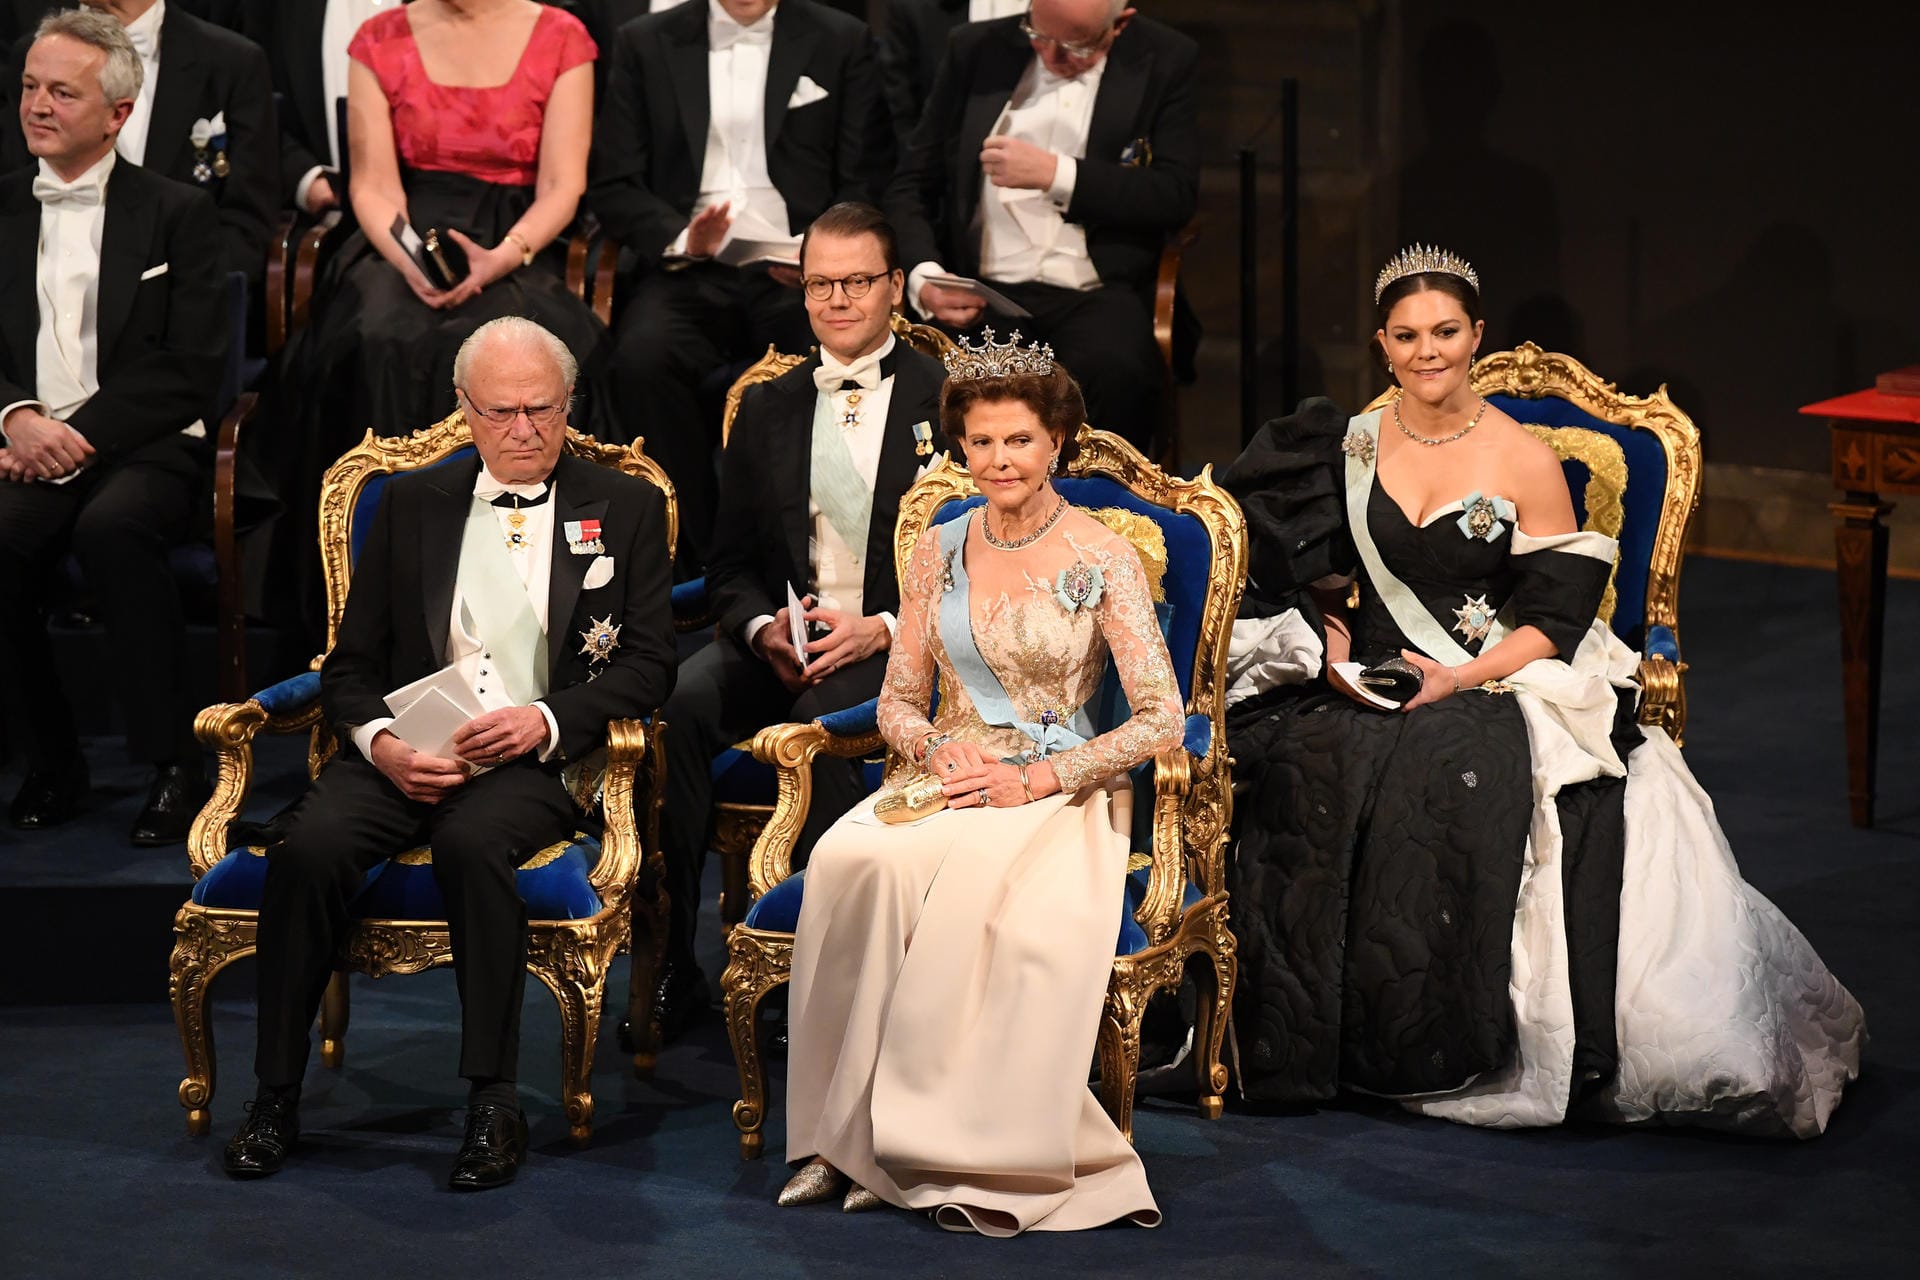 König Carl XVI Gustaf von Schweden, Prinz Daniel von Schweden, Königin Silvia von Schweden und Kronprinzessin Victoria bei der Nobelpreis-Gala